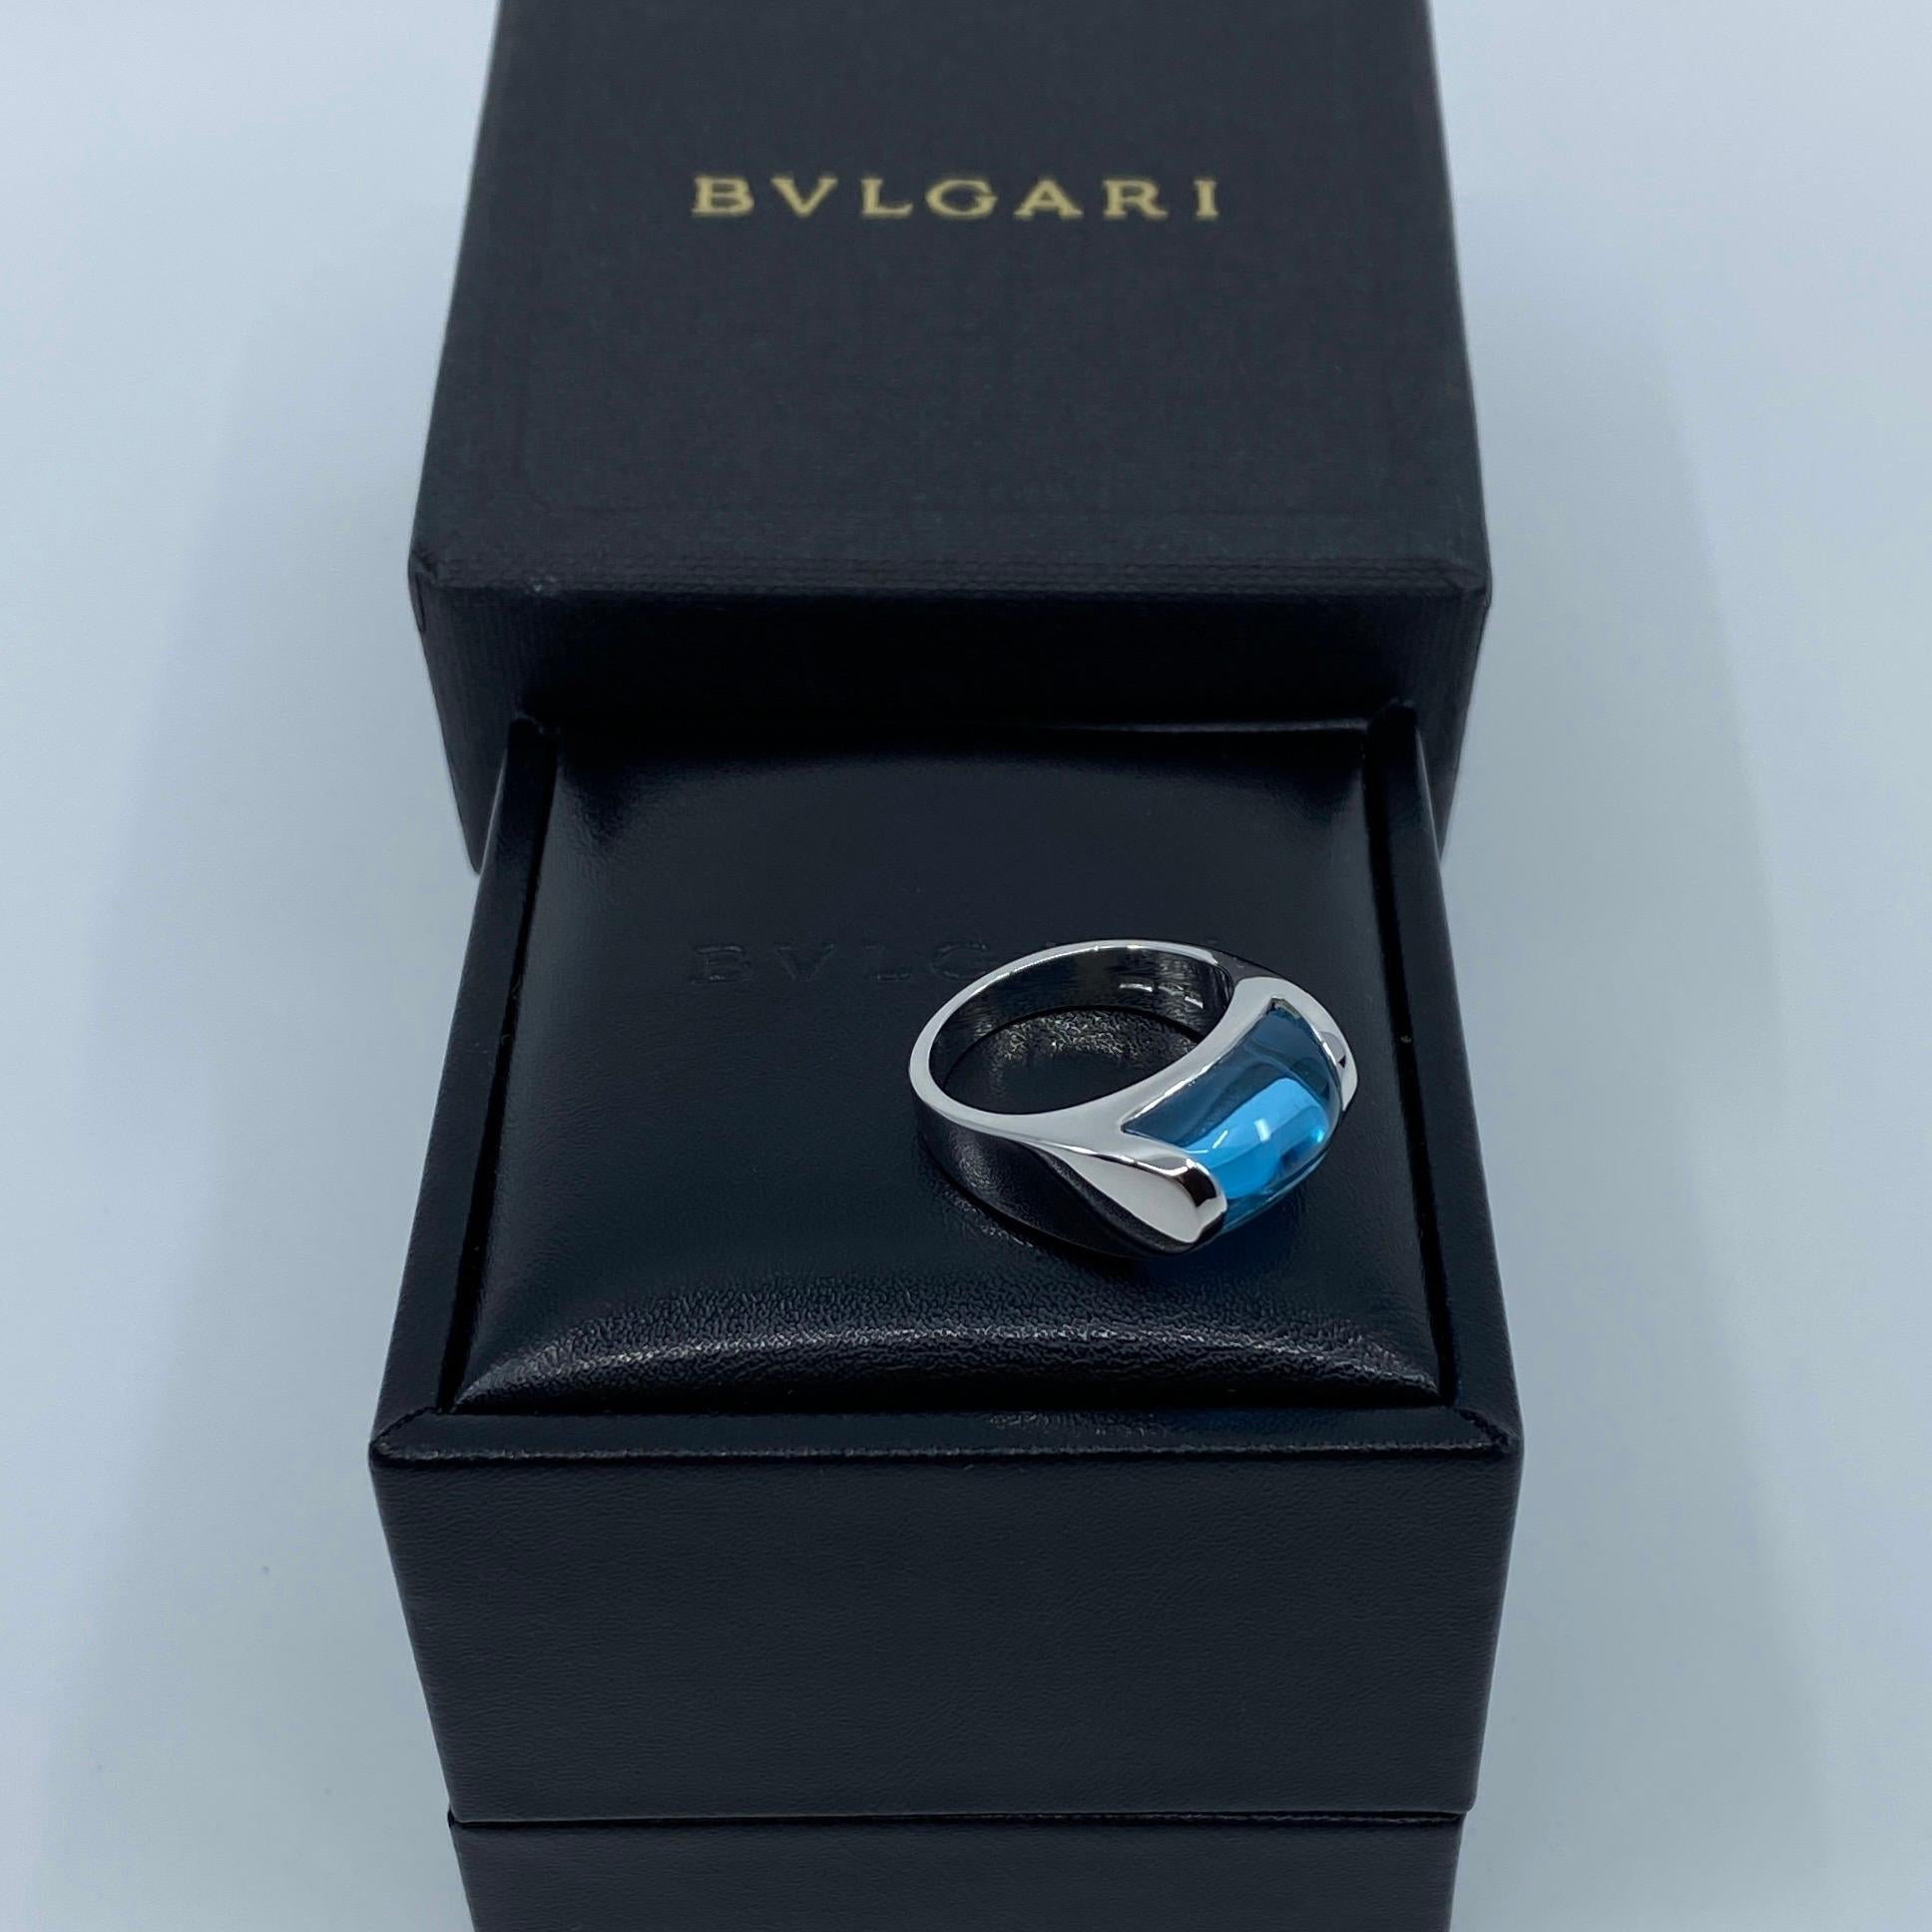 Vintage Bvlgari Bulgari Tronchetto 18 Karat White Gold Blue Topaz Ring with Box 9